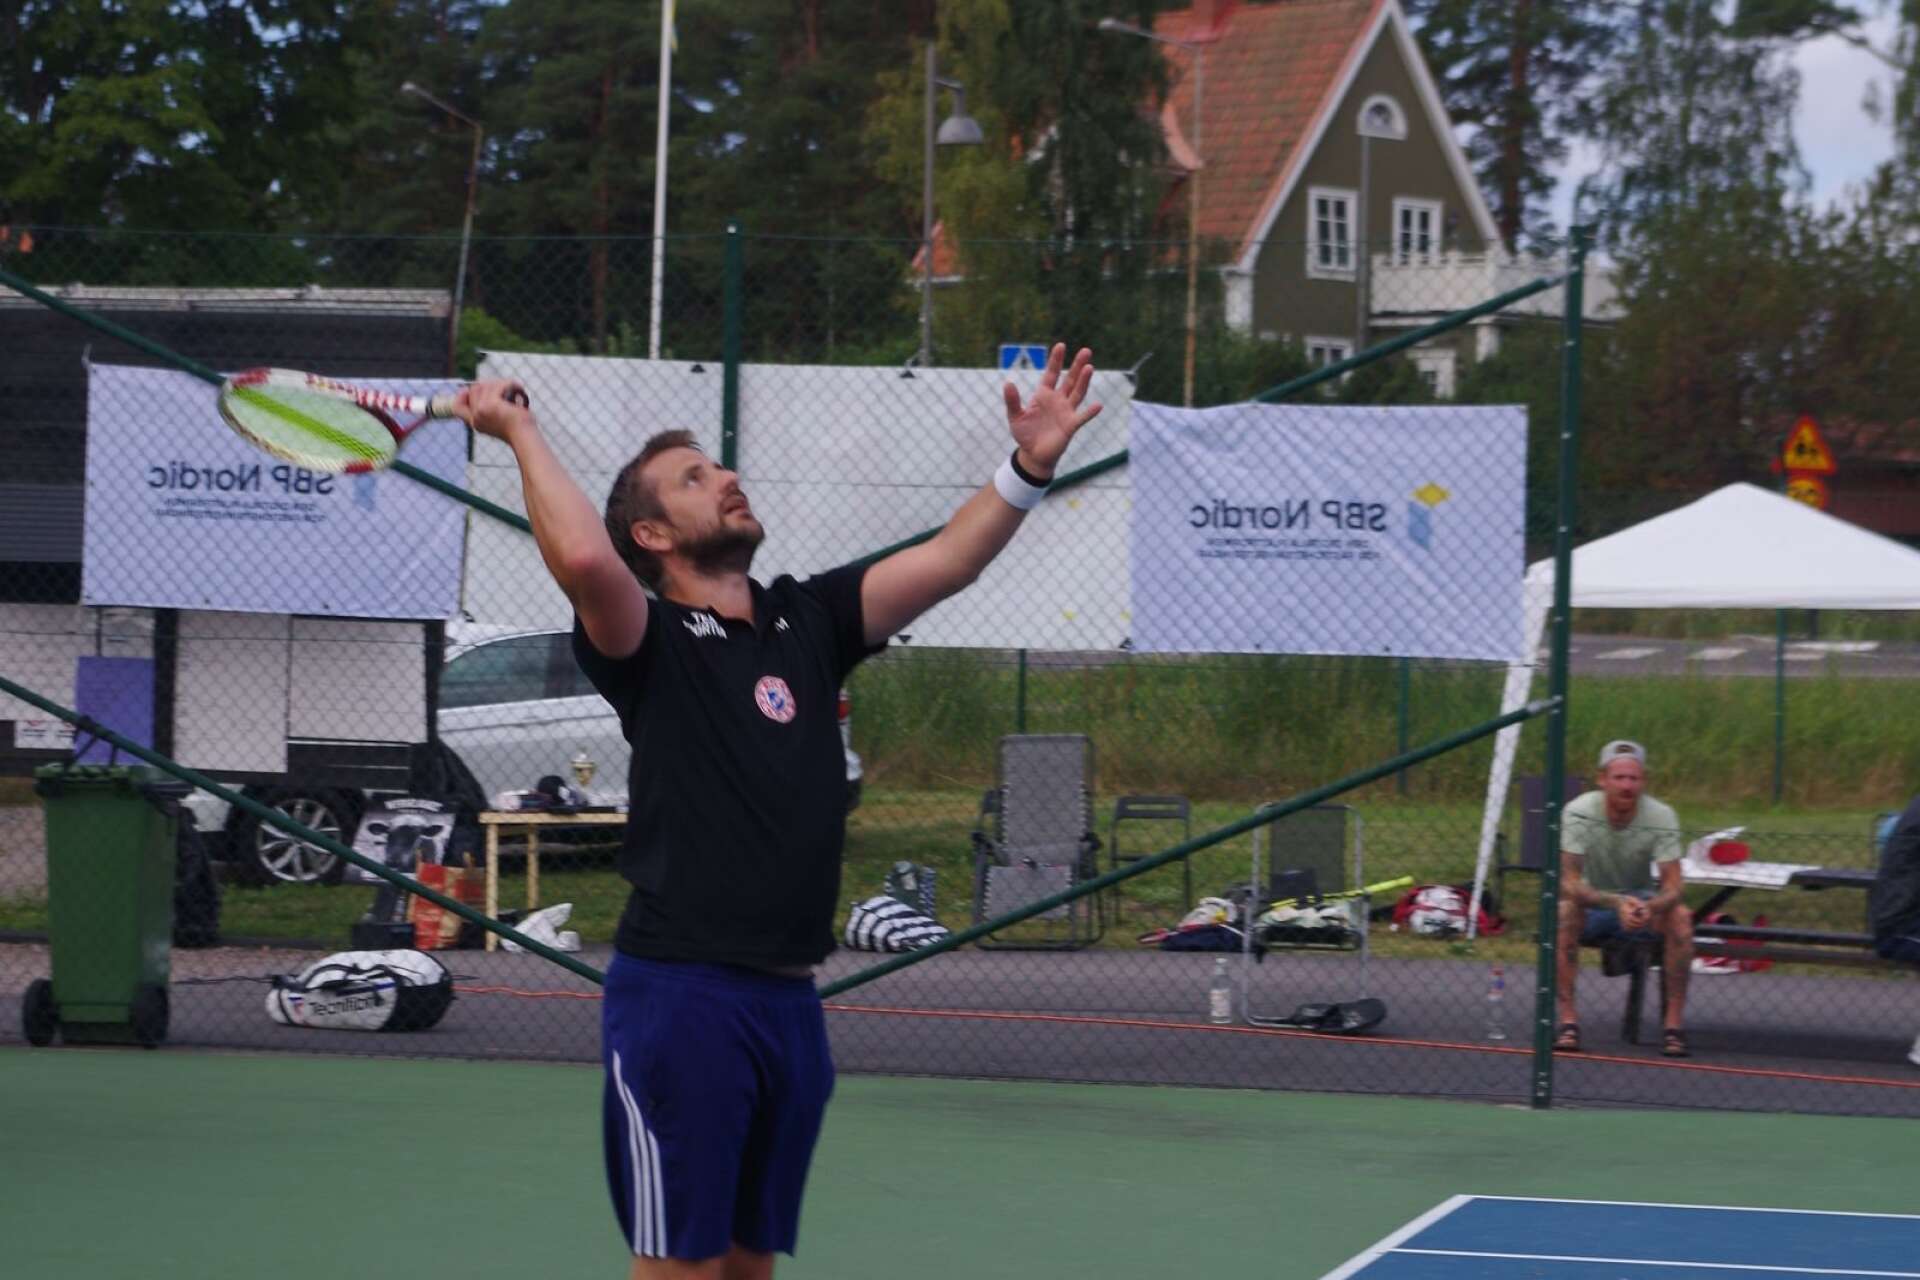 Fotbollsspelaren Mattias Svärd blir allt bättre i tennis